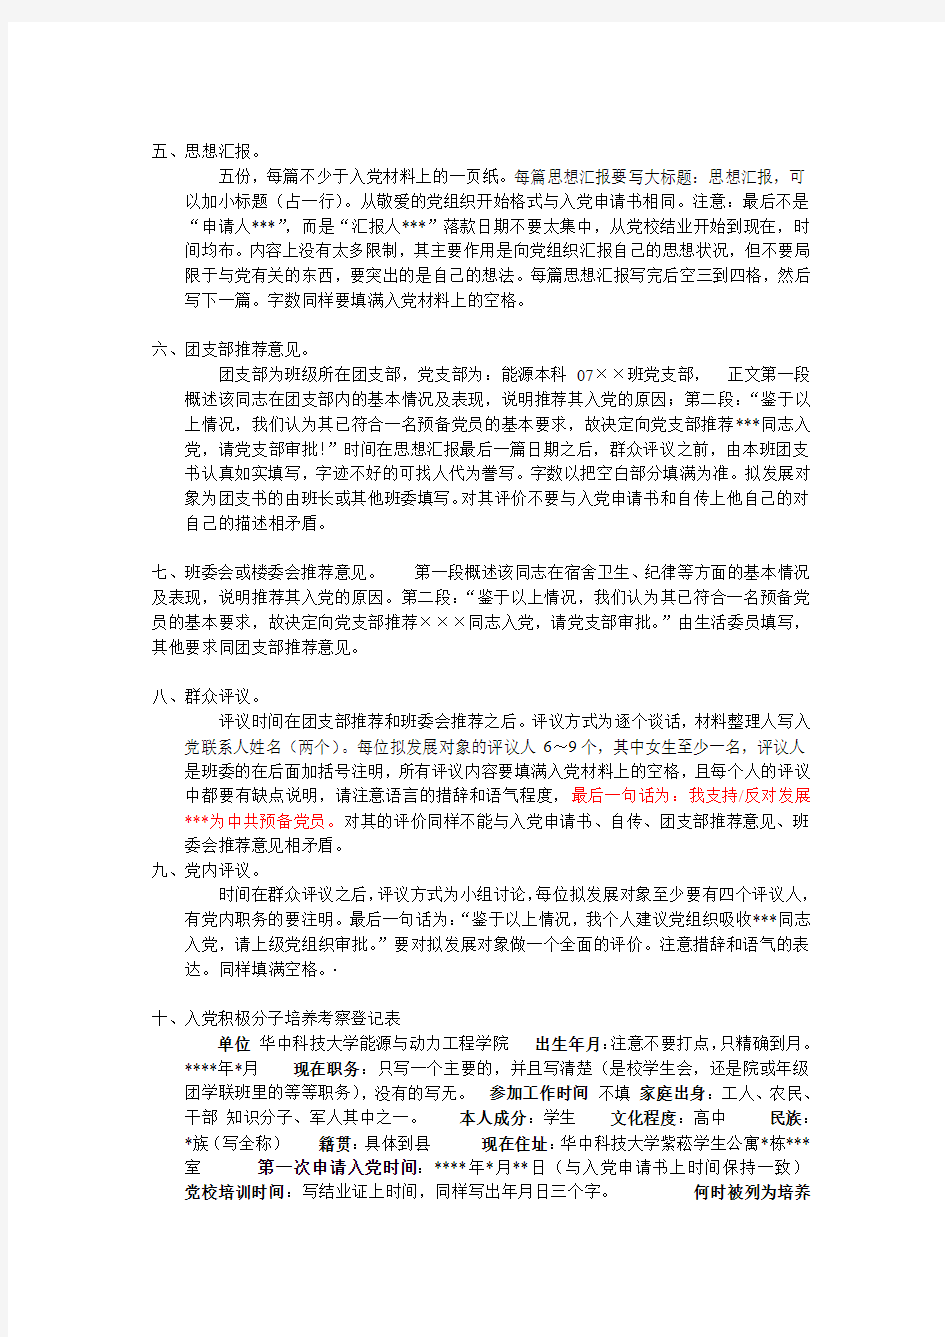 华中科技大学--党员发展材料格式规范